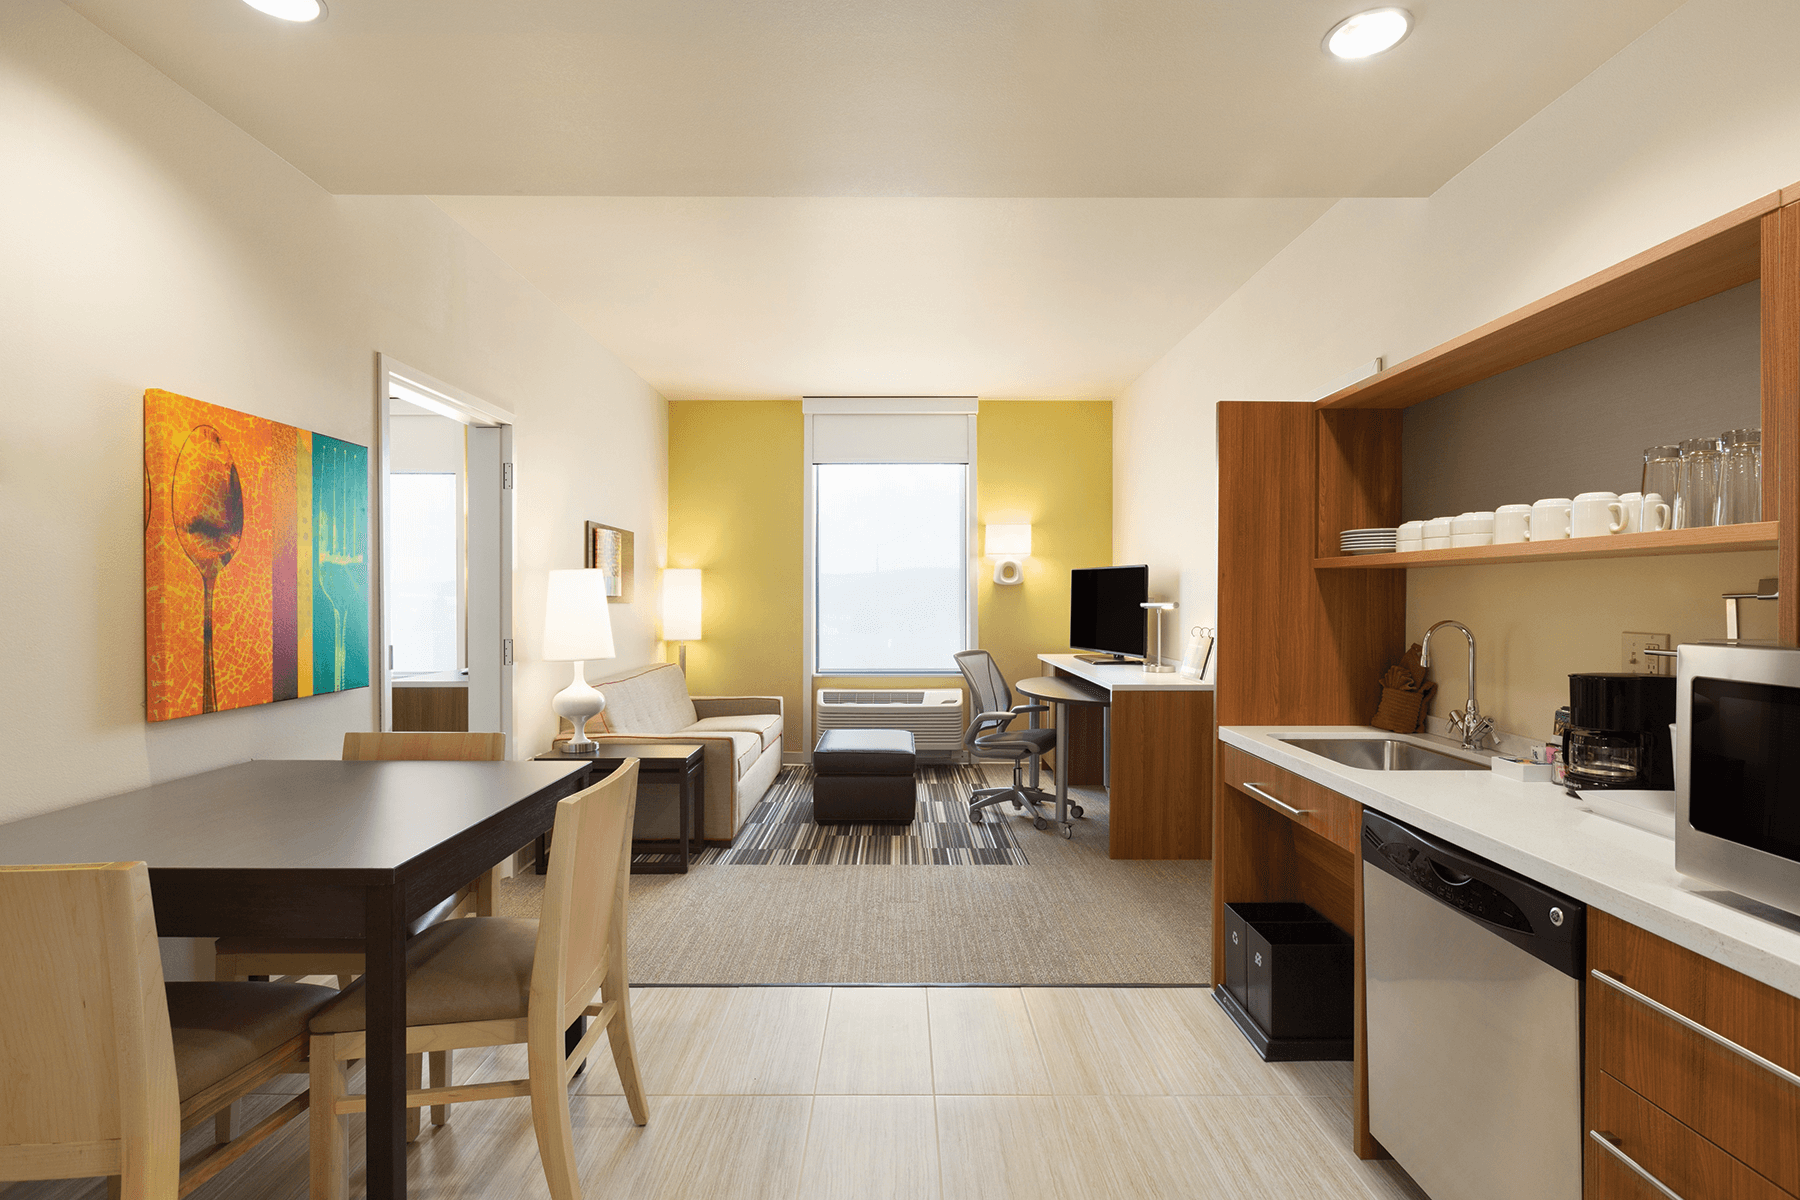   Home 2 Suites Queen Suite - Living Area interior 